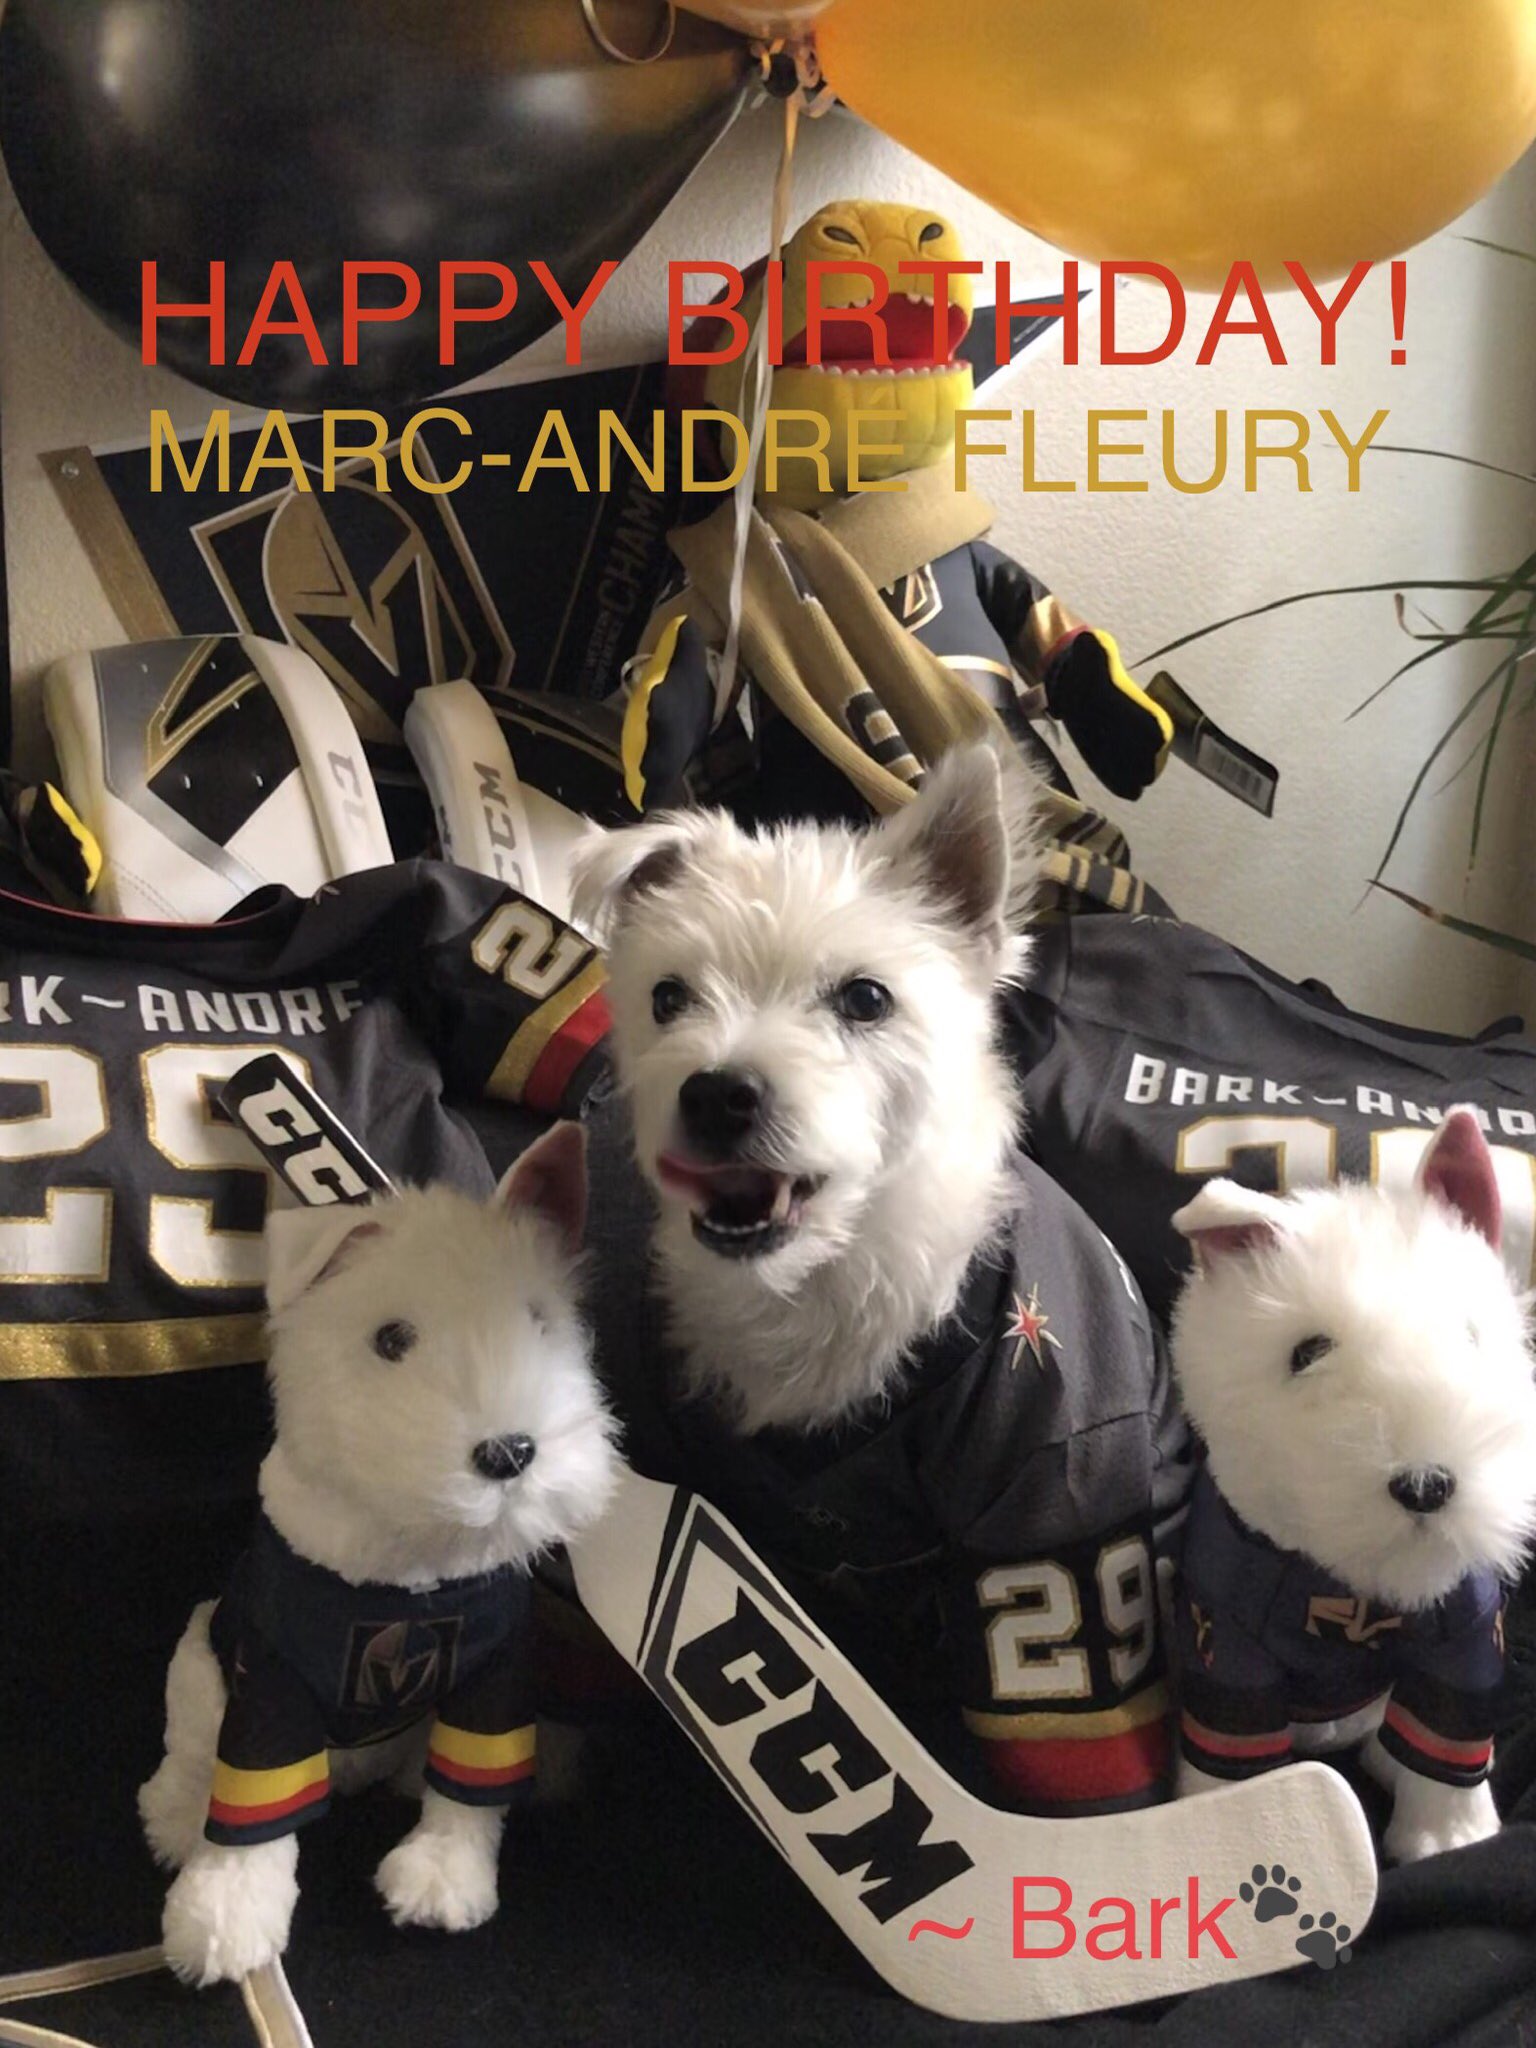 HAPPY BIRTHDAY  MARC-ANDRÉ FLEURY!
~ Bark       